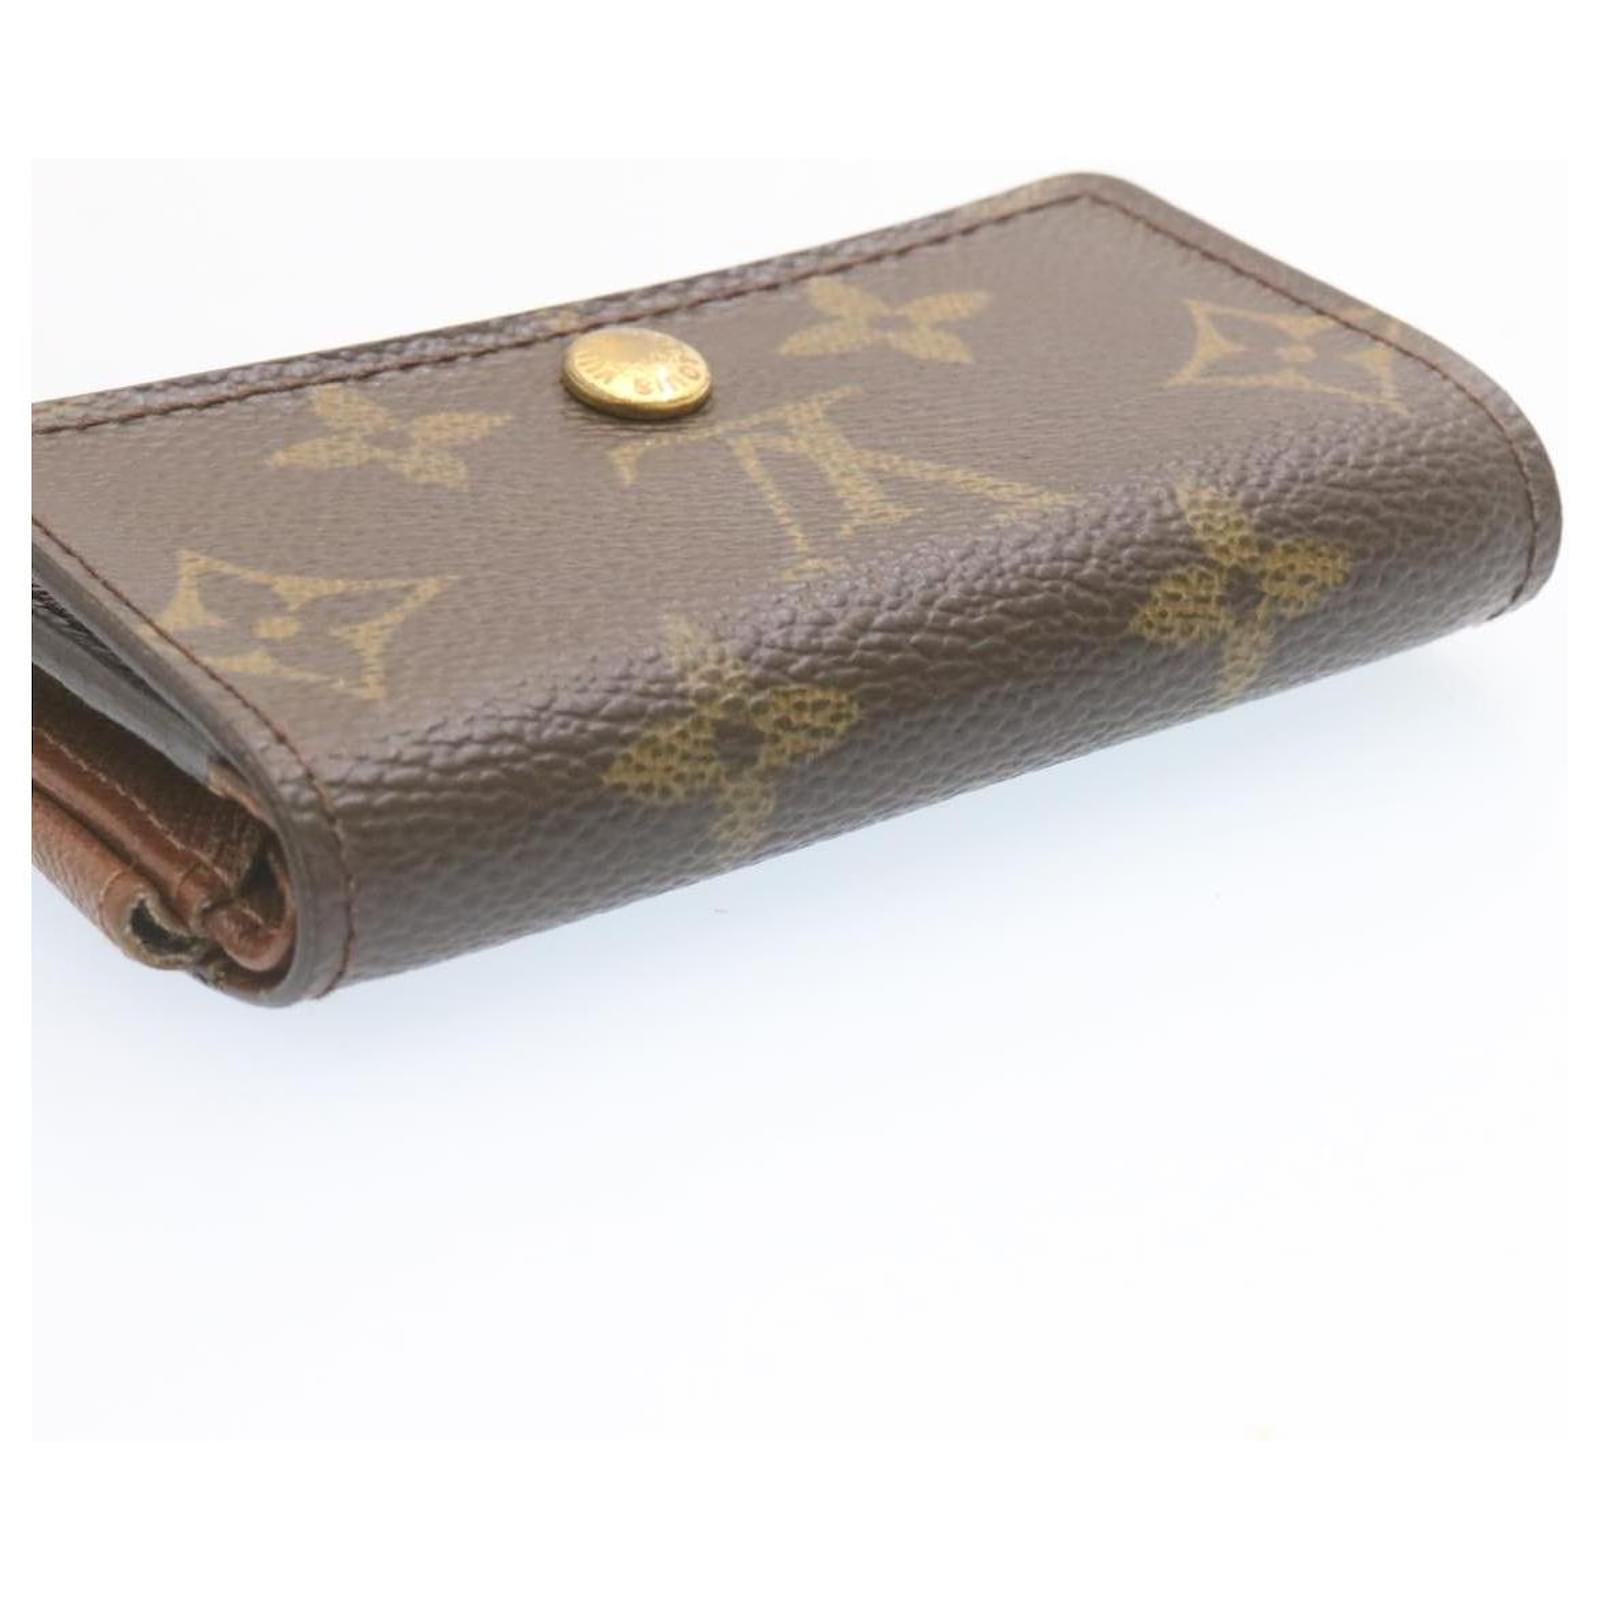 LOUIS VUITTON Porte Monnaie Plat Coin purse Wallet M61930